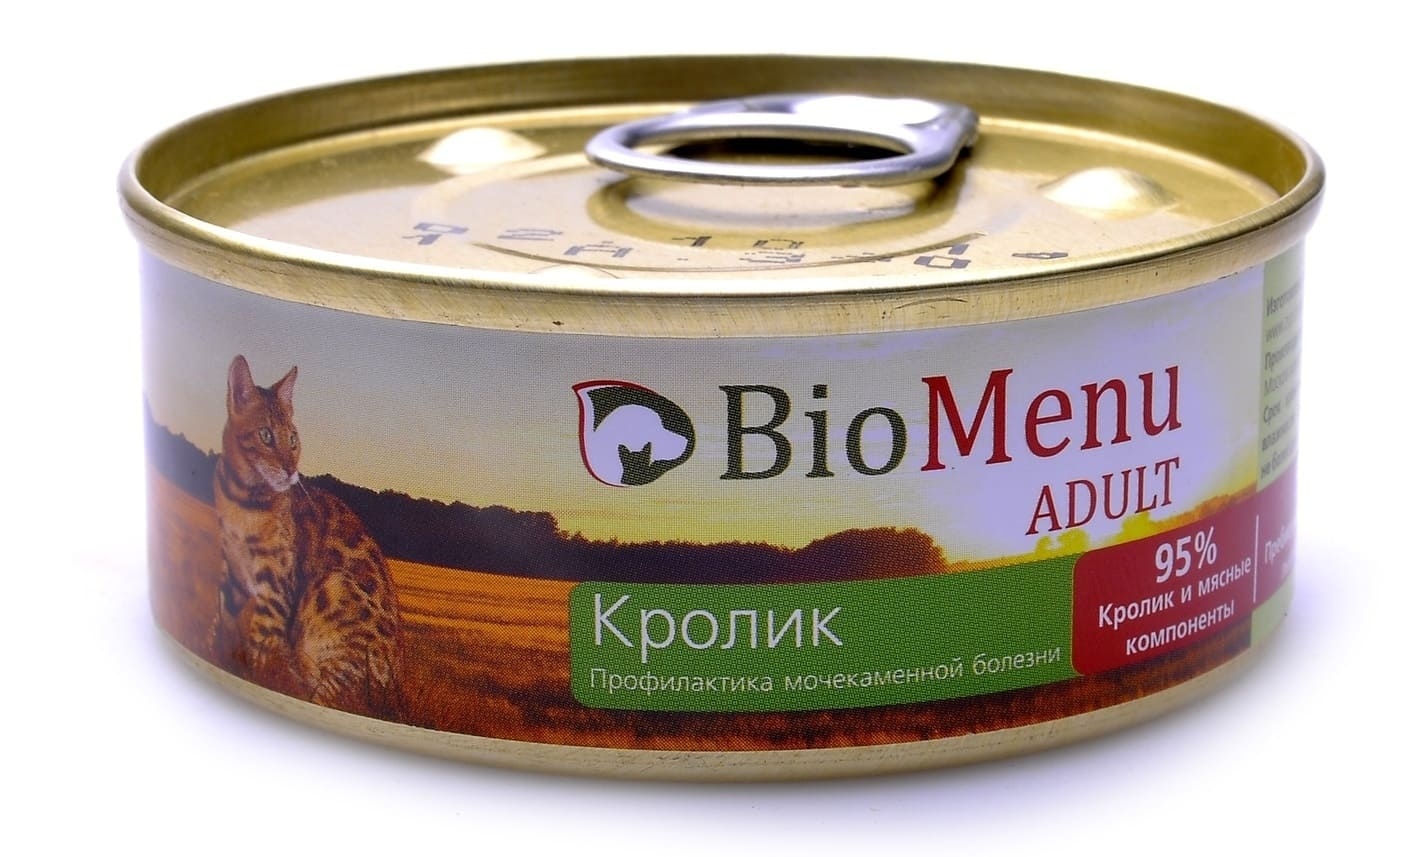 BioMenu BioMenu паштет для кошек с кроликом (100 г) консервы biomenu adult для кошек мясной паштет с кроликом 95% мясо 100 г